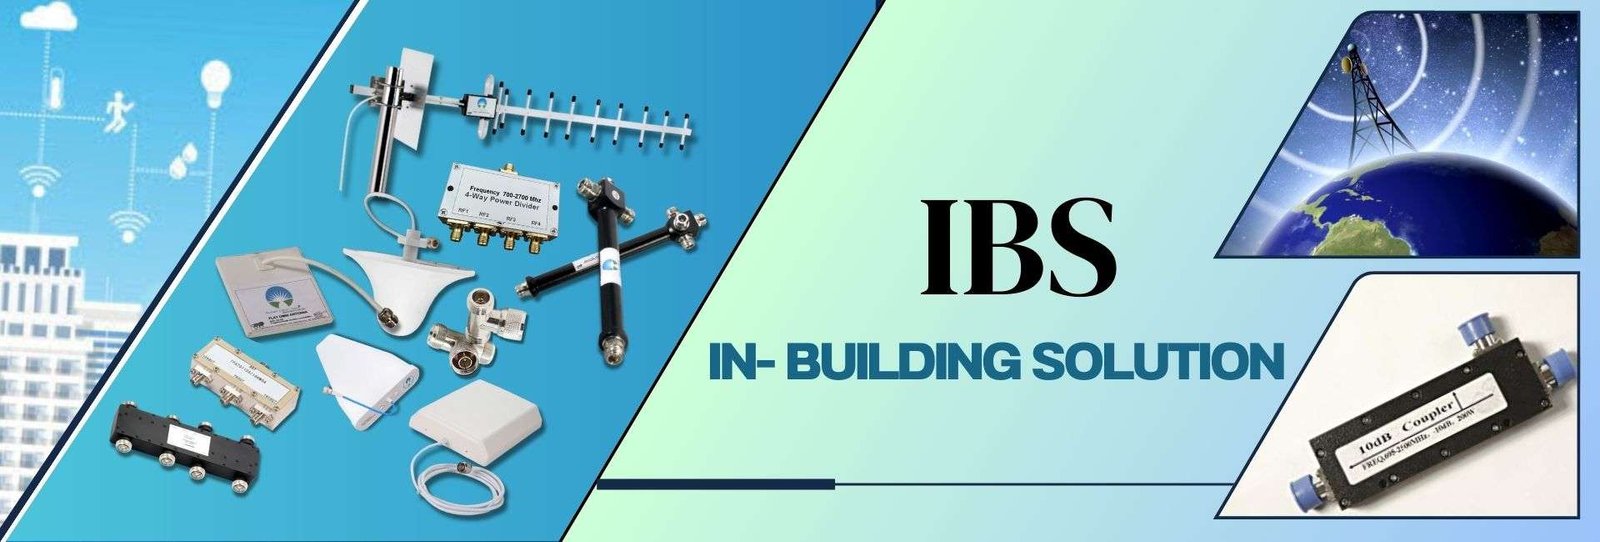 9_In- Building Solution (IBS).jpg